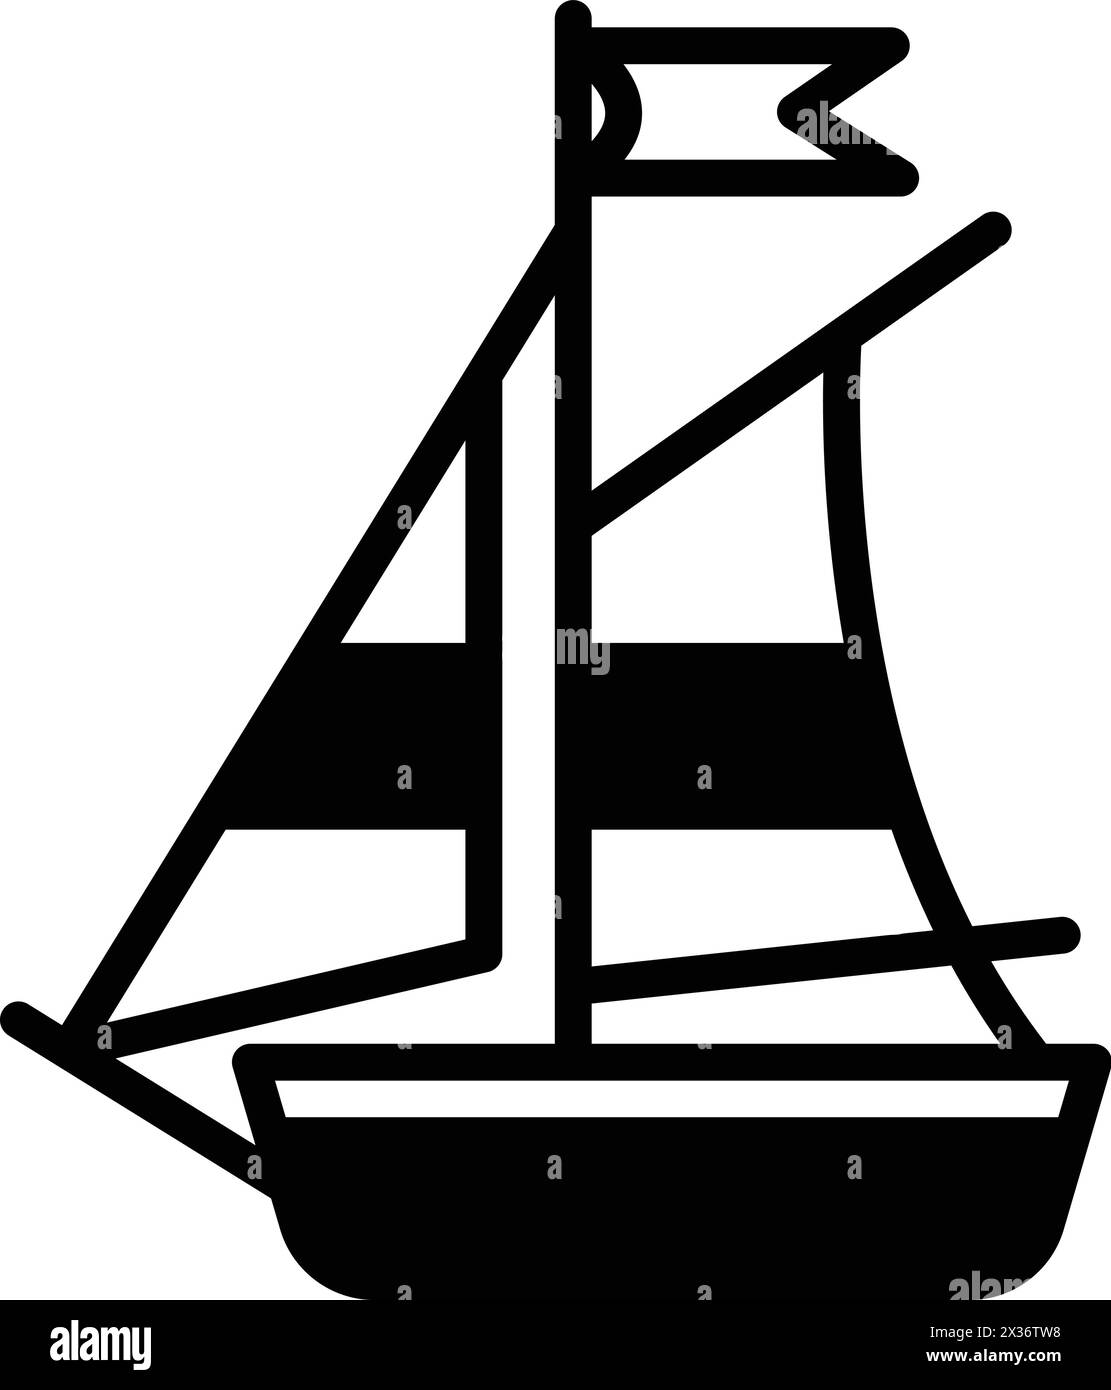 Un disegno in bianco e nero di una barca a vela. La barca è piccola e ha una bandiera in cima. L'imbarcazione è posizionata al centro dell'immagine Illustrazione Vettoriale